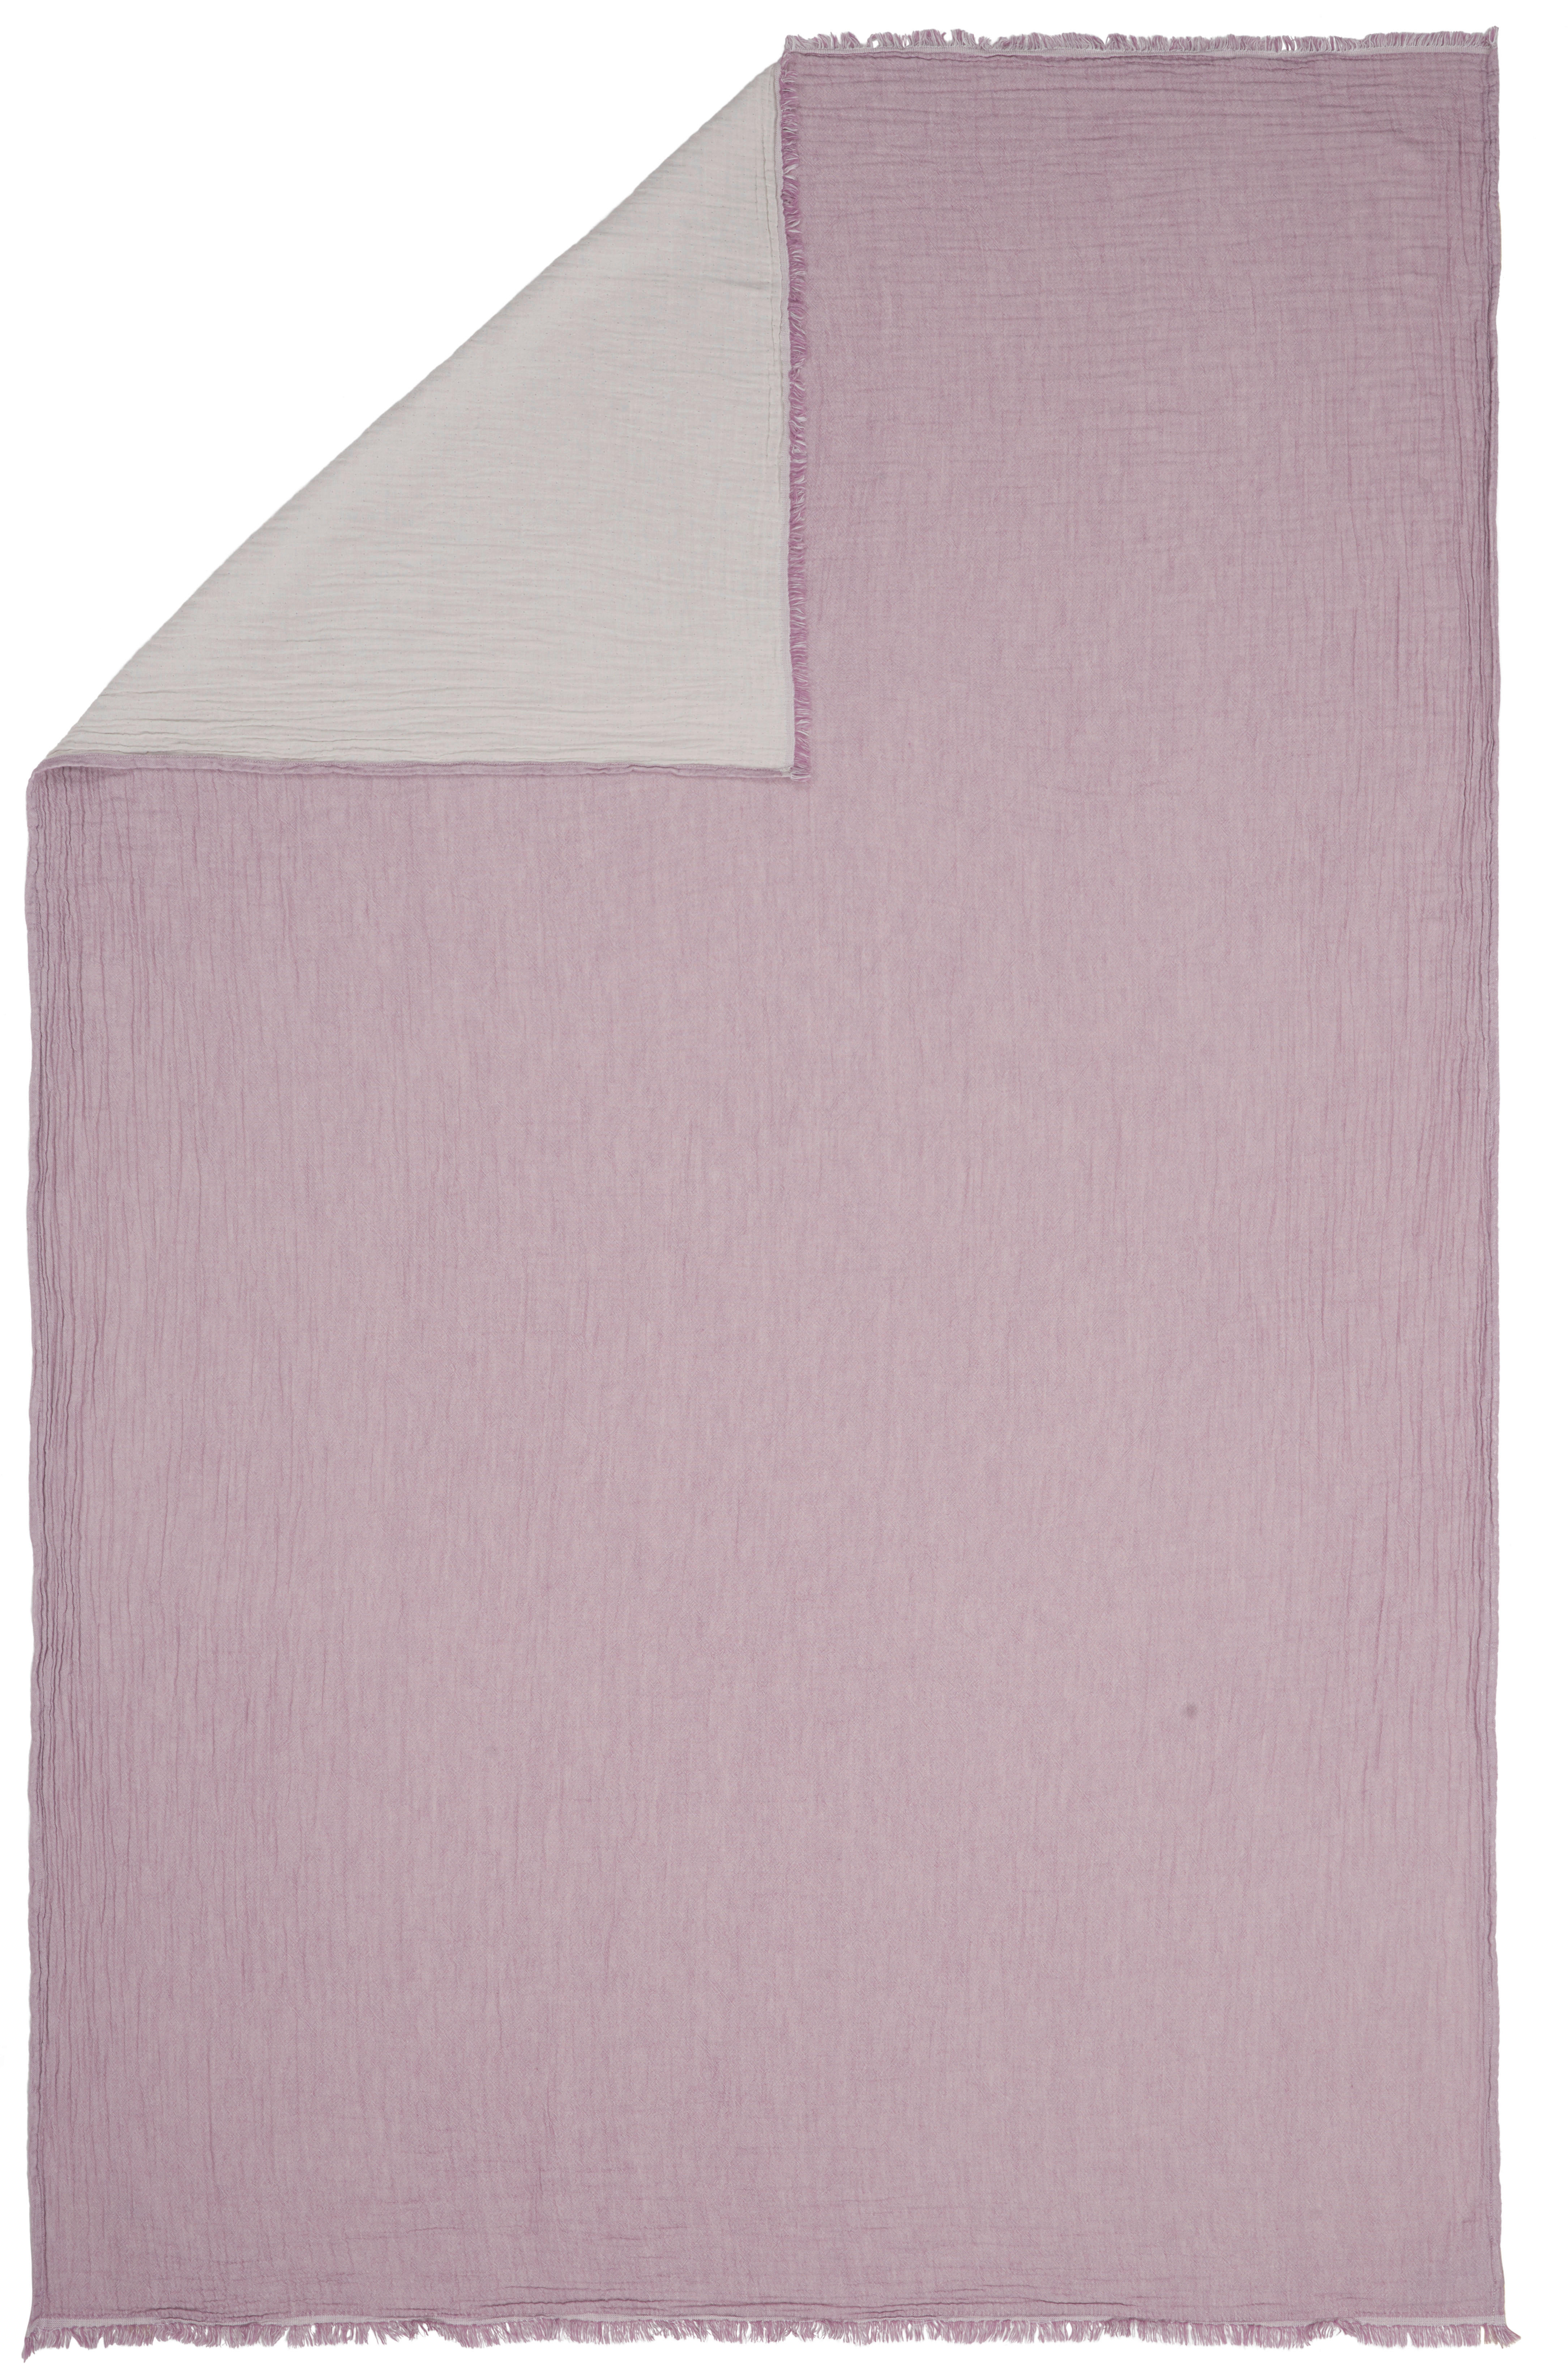 Ambiente DOMÁCÍ DEKA, bavlna, 150/200 cm - fialová, přírodní barvy